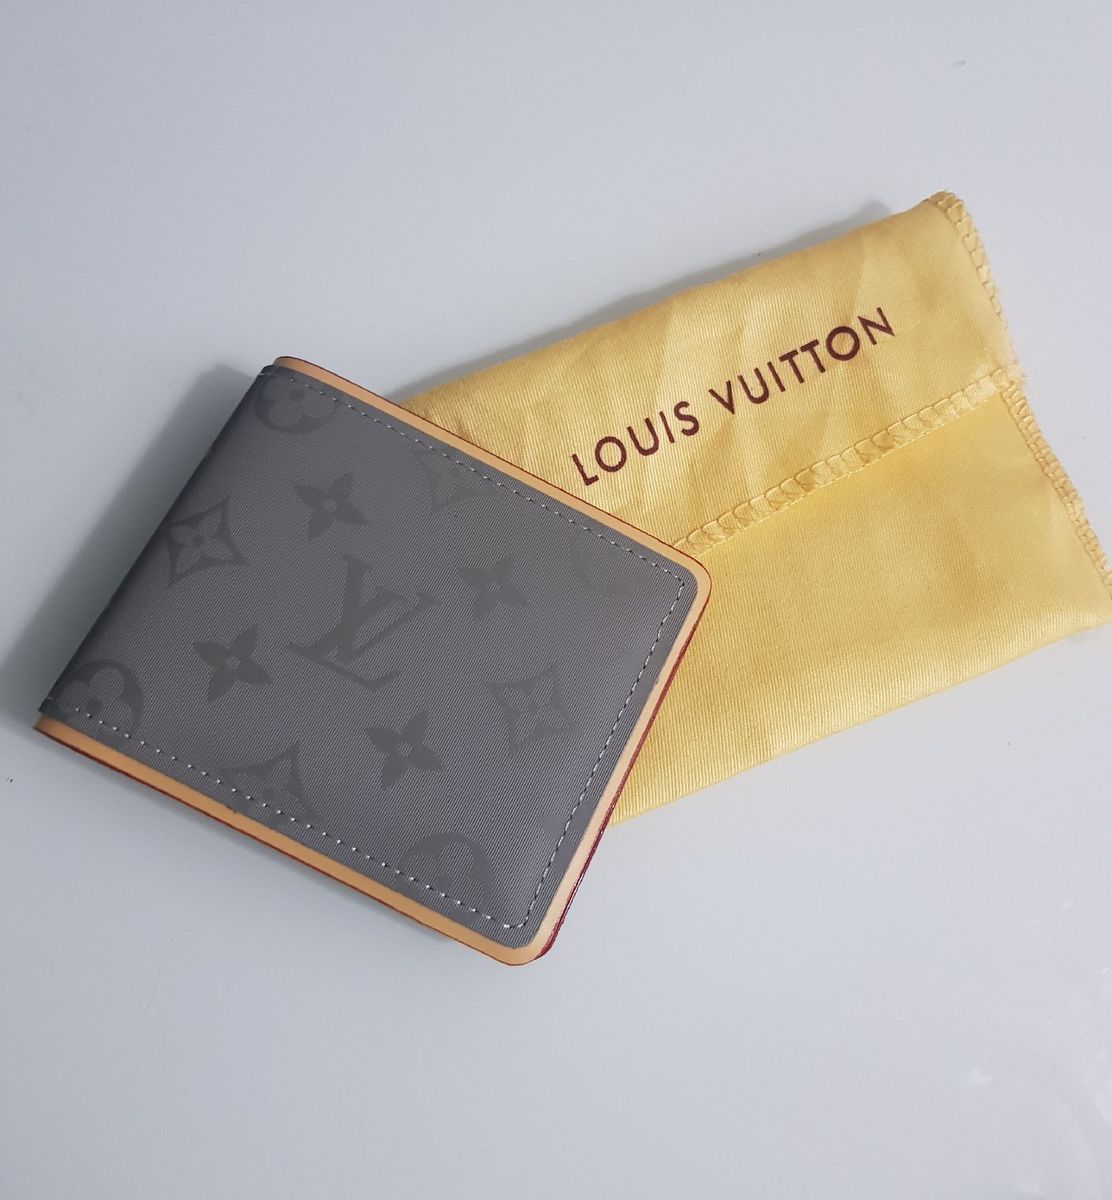 Preços baixos em Louis Vuitton CARTEIRAS masculinas